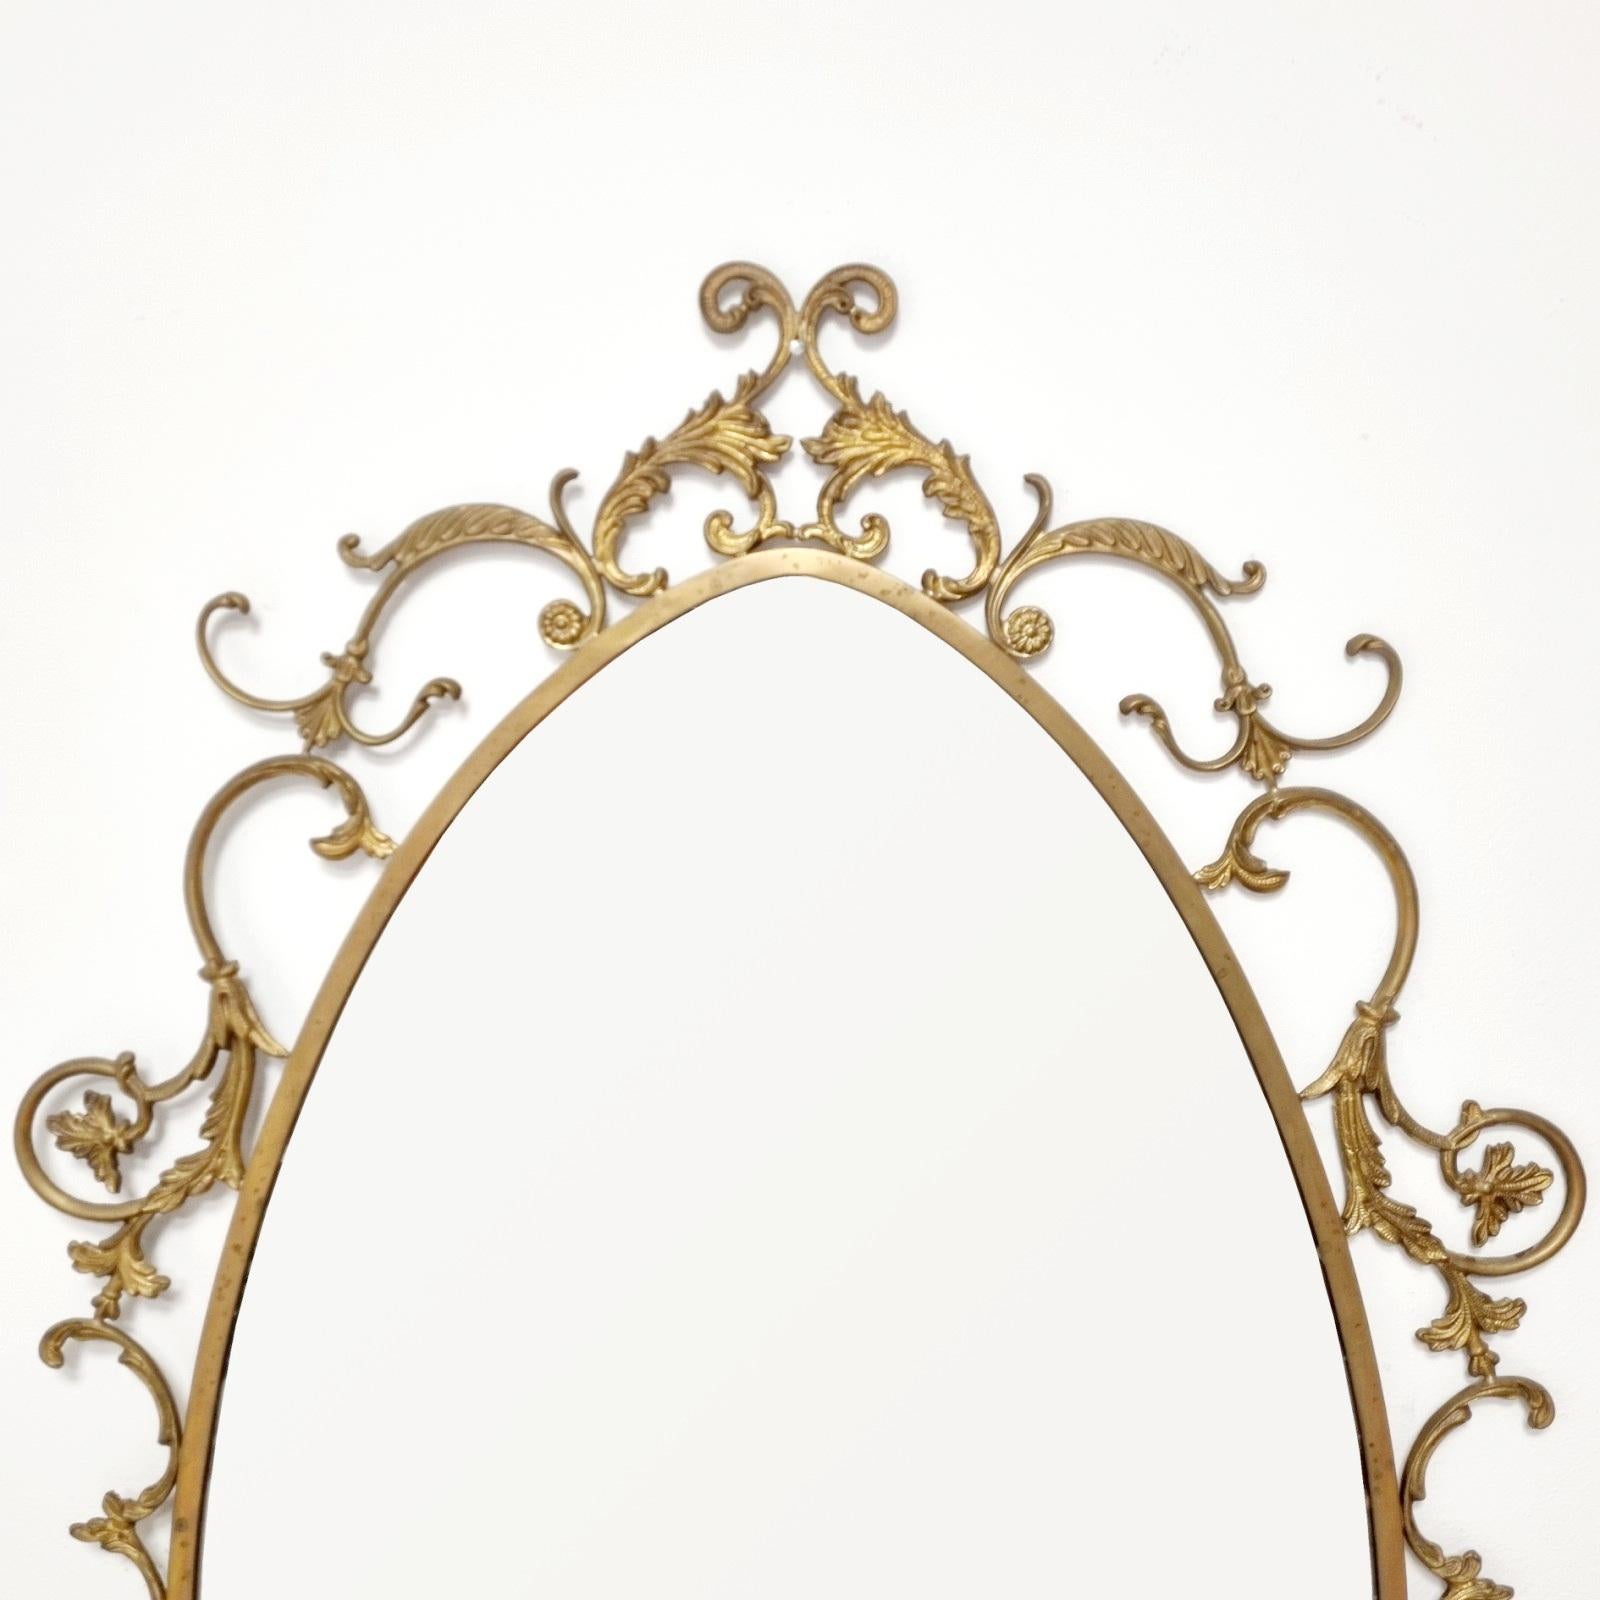 Grand miroir en laiton fabriqué en Italie dans les années 60.
Avec ornements
En très bon état avec des signes d'âge.